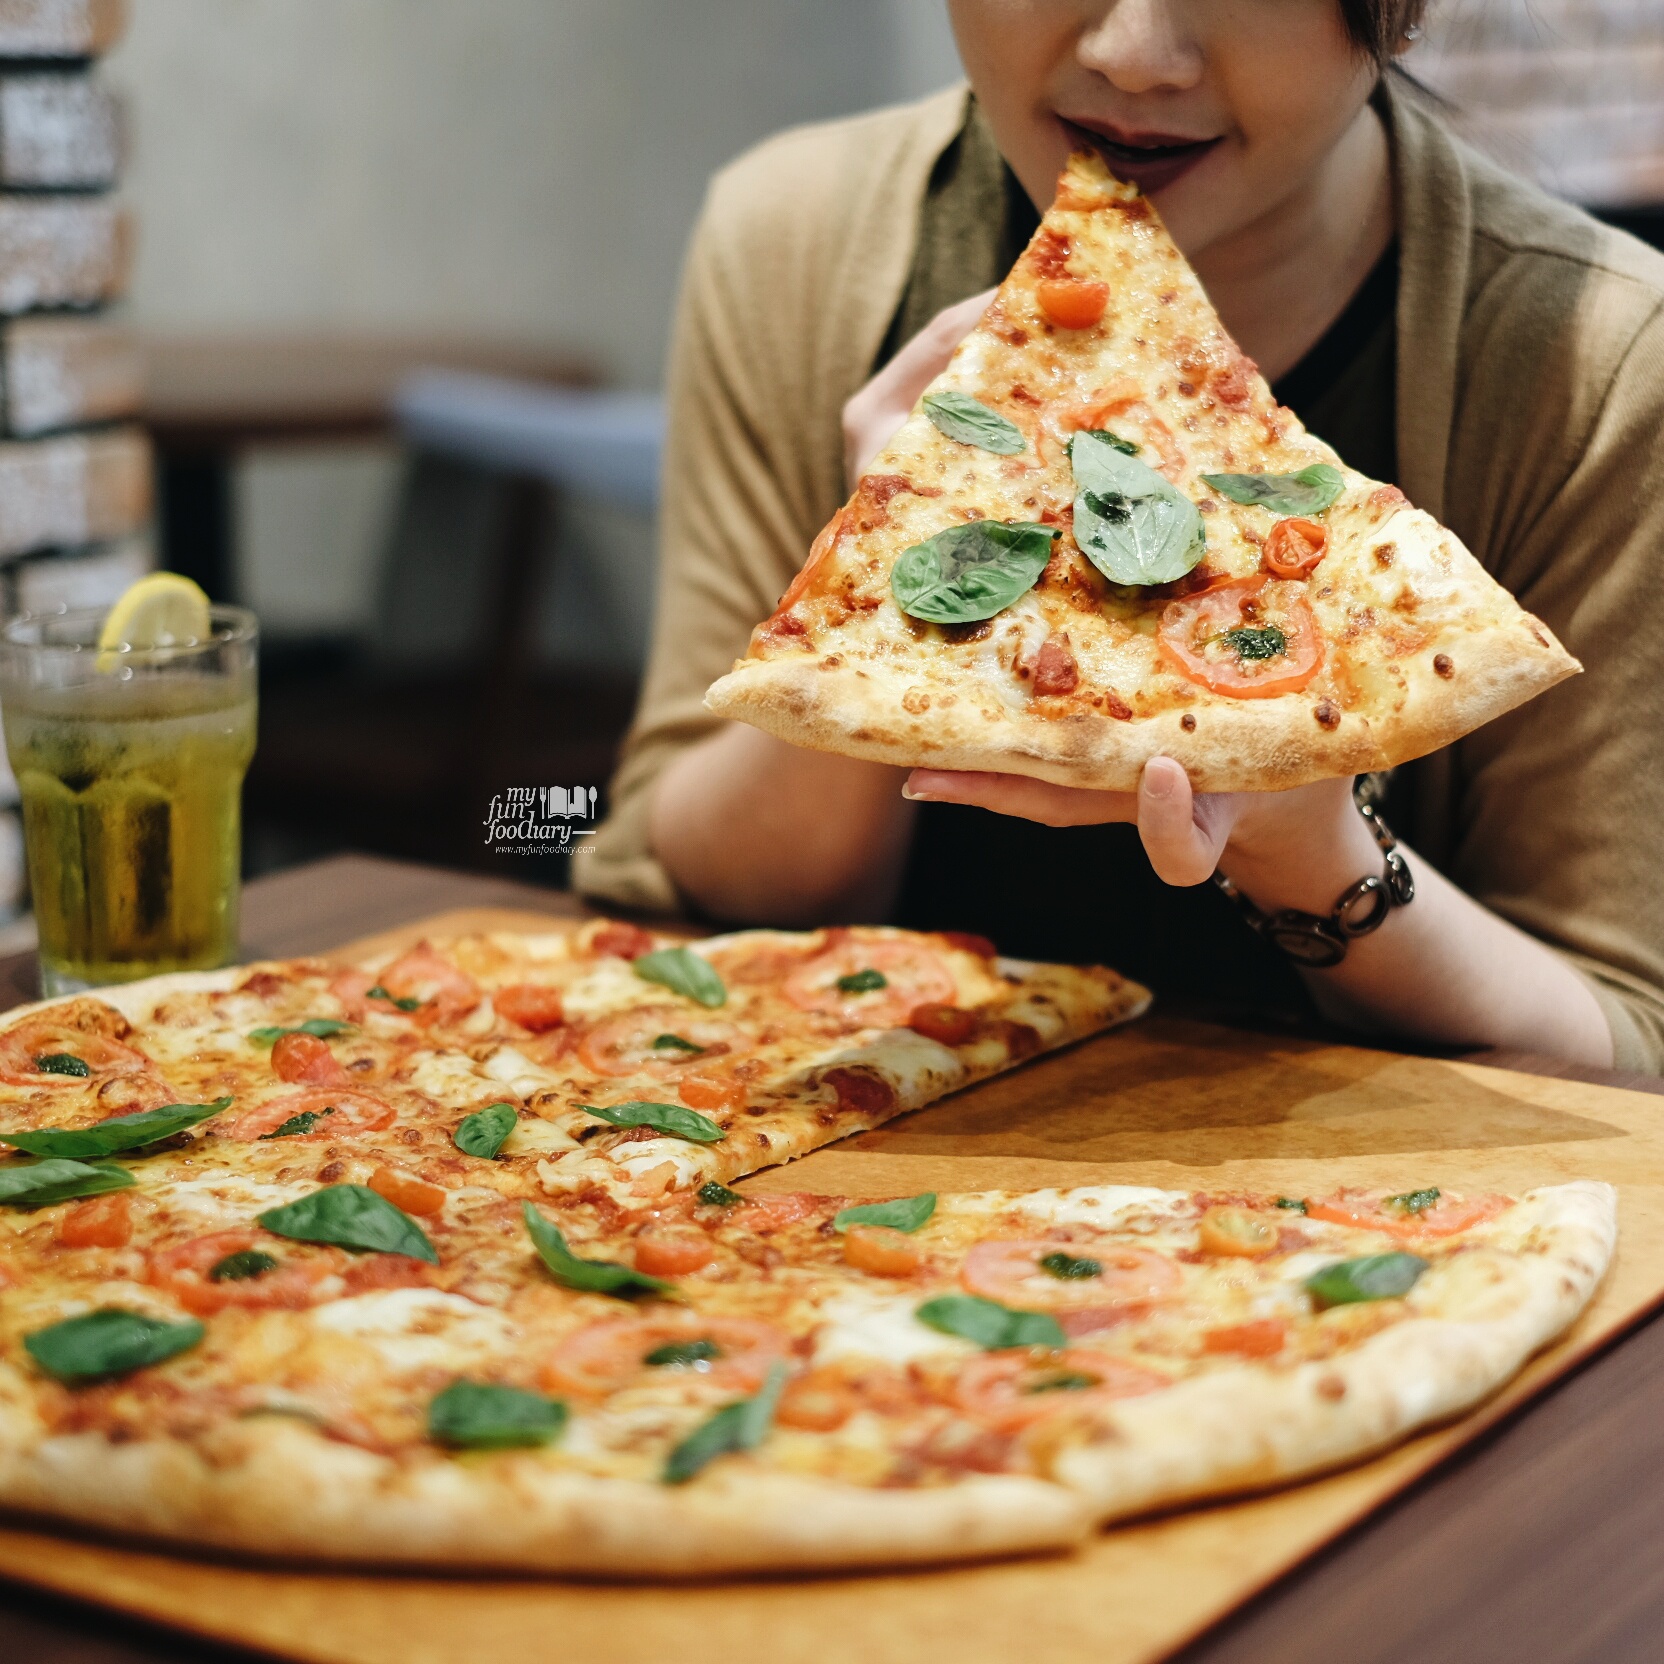 18" Jumbo Size Pizza at The Kitchen Pizza Hut by Myfunfoodiary